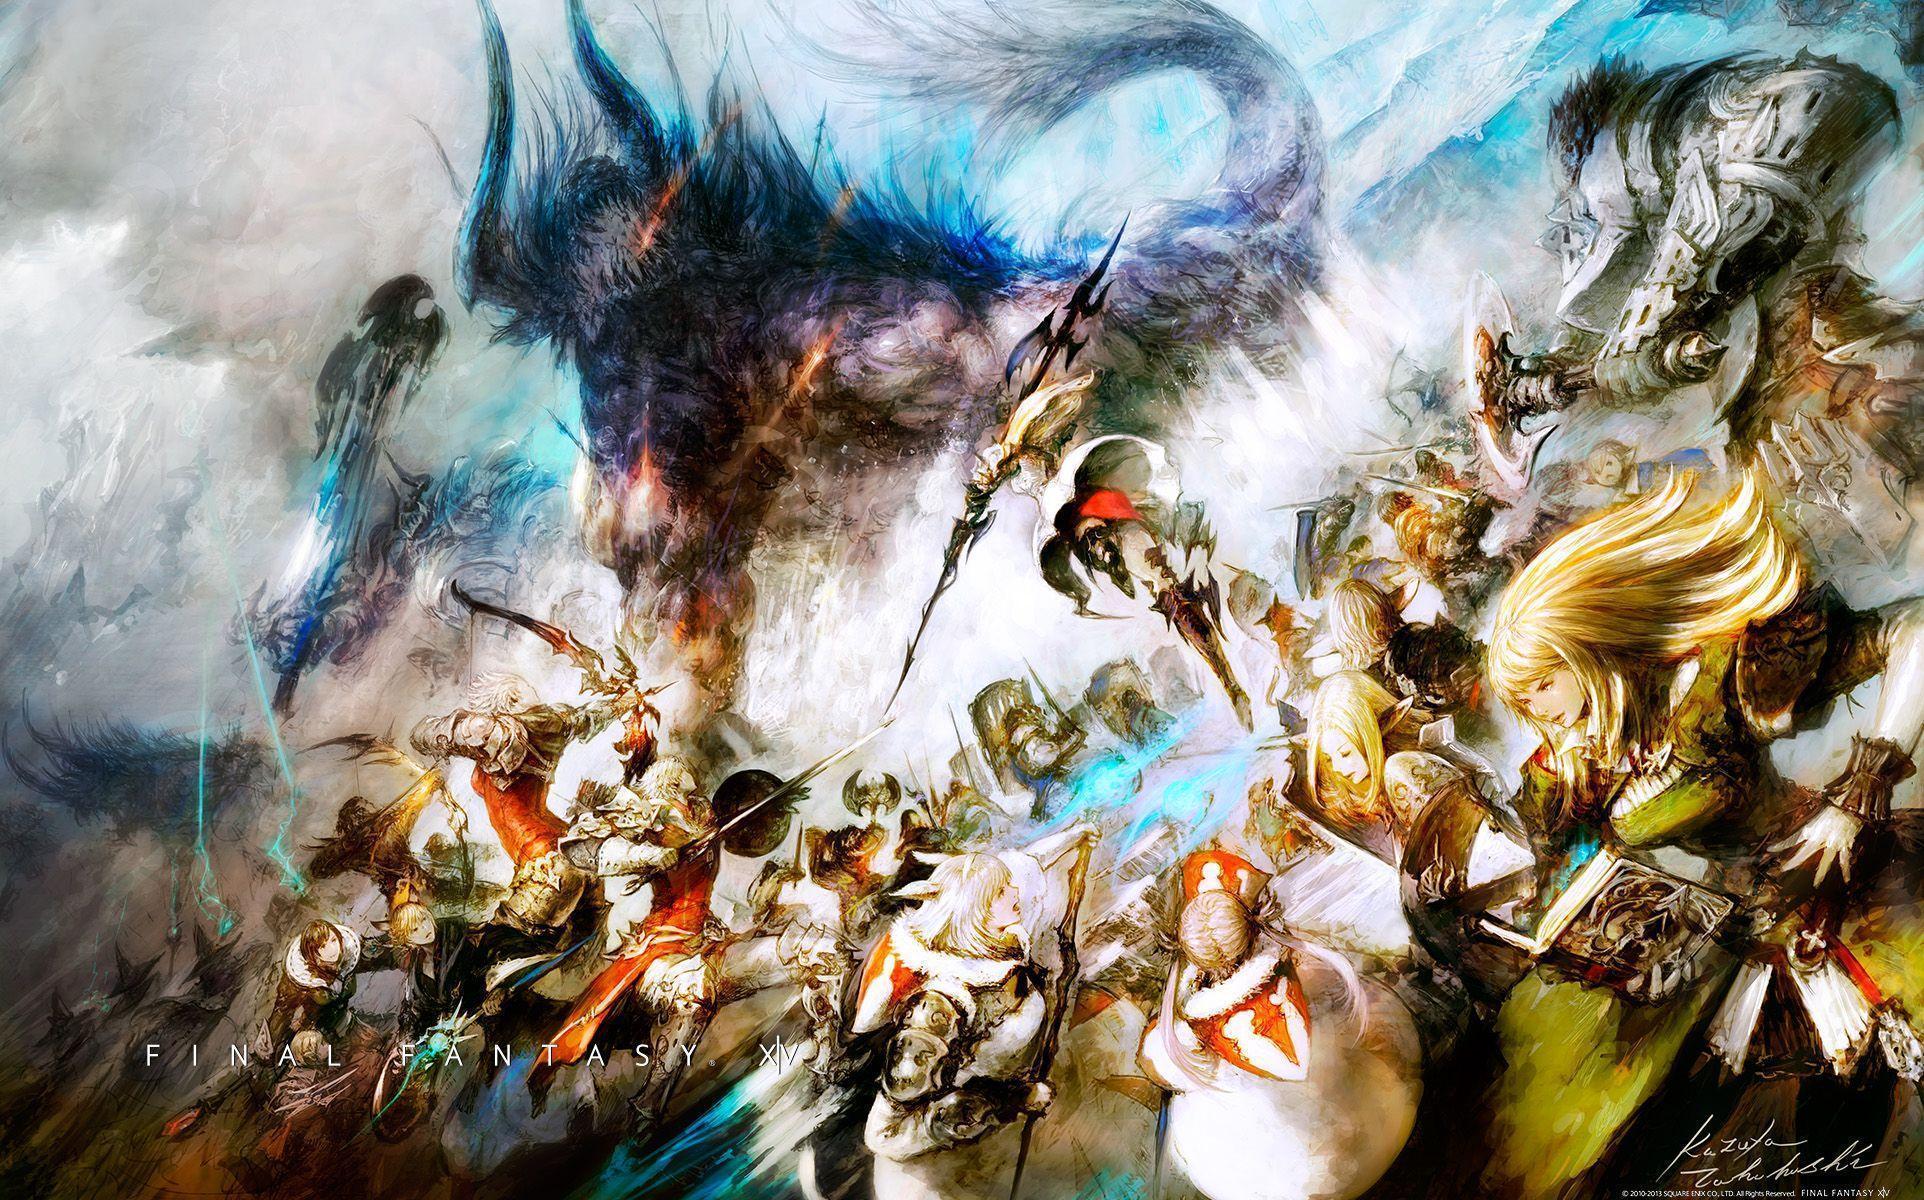 Final Fantasy XV Wallpaper